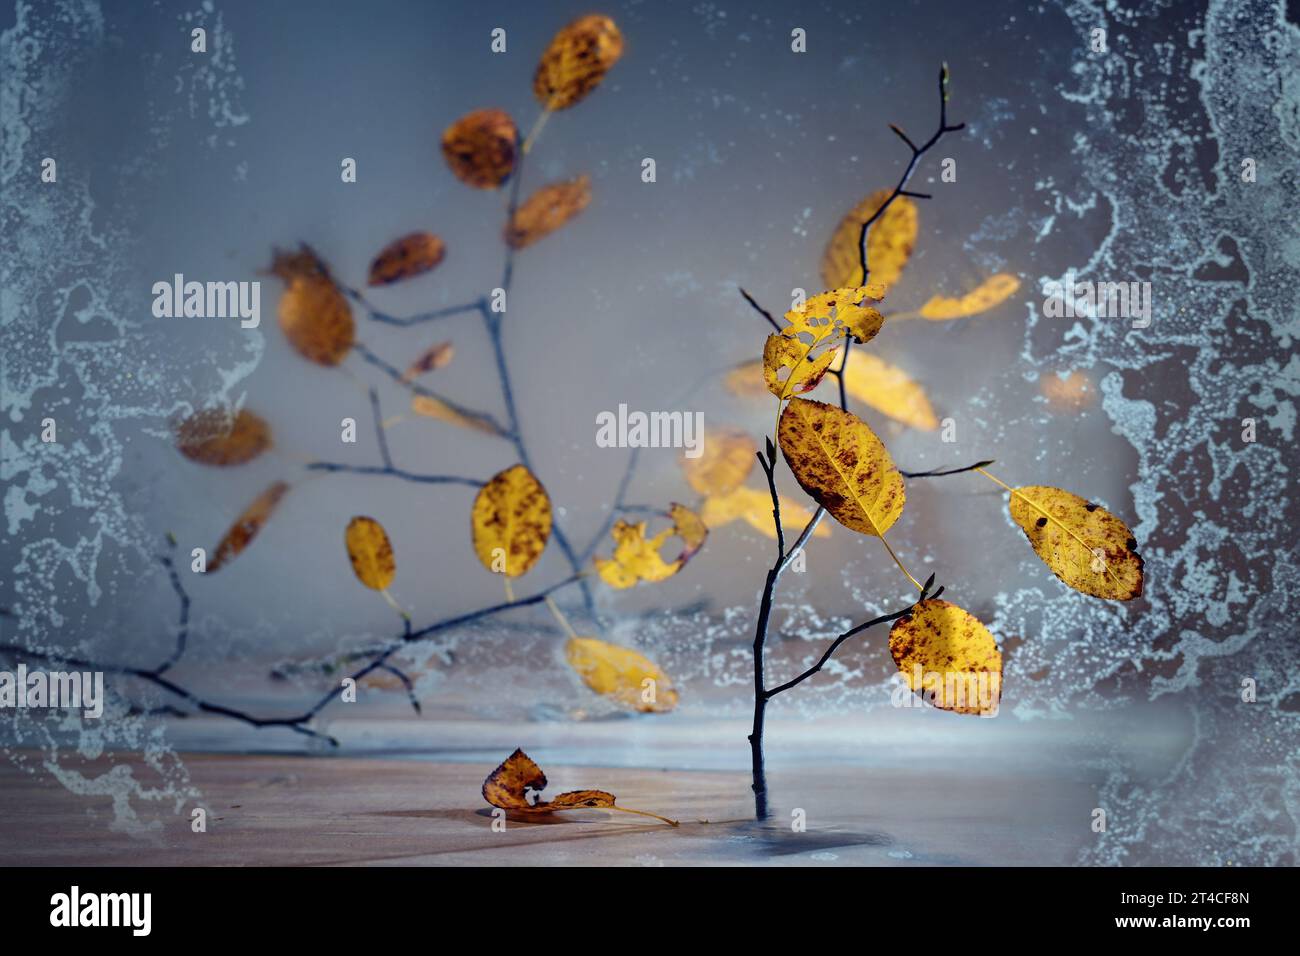 Fines brindilles avec des feuilles d'automne orange doré debout partiellement derrière une plaque de verre dépoli sur un fond bleu gris, nature morte atmosphérique pour Banque D'Images